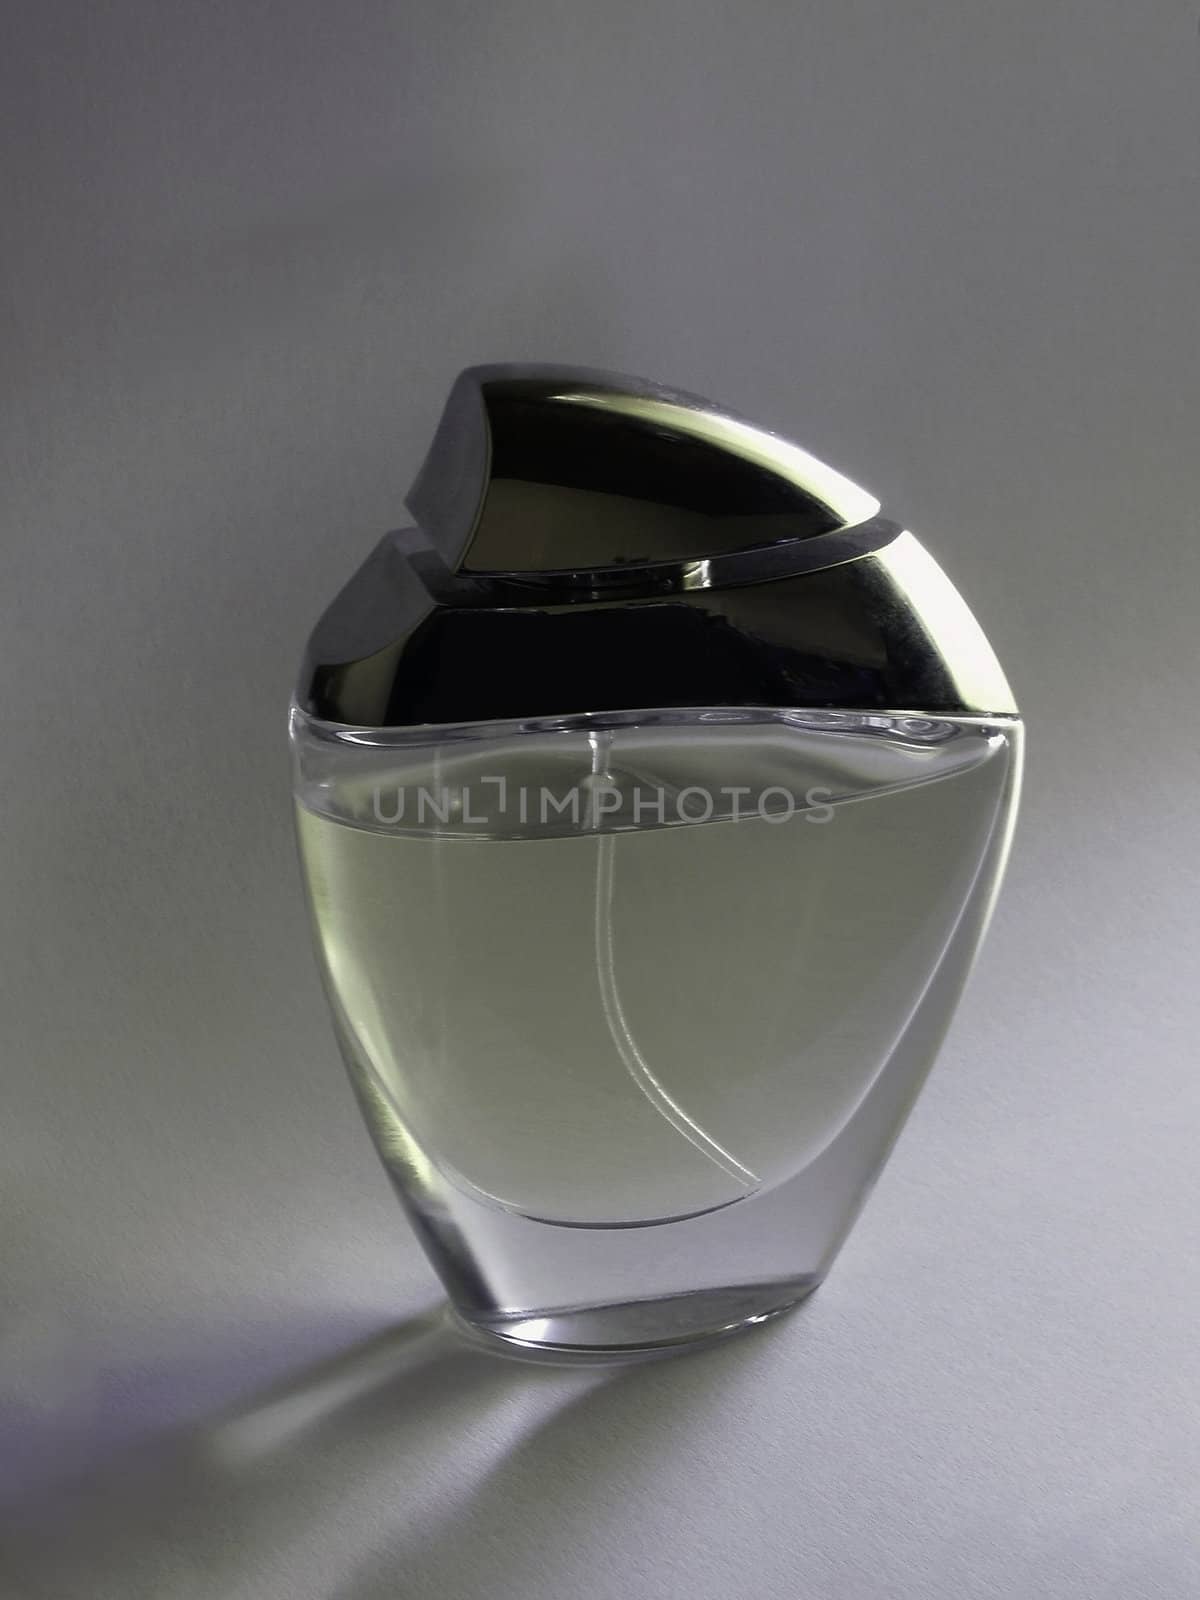 Bottle of parfume by jol66